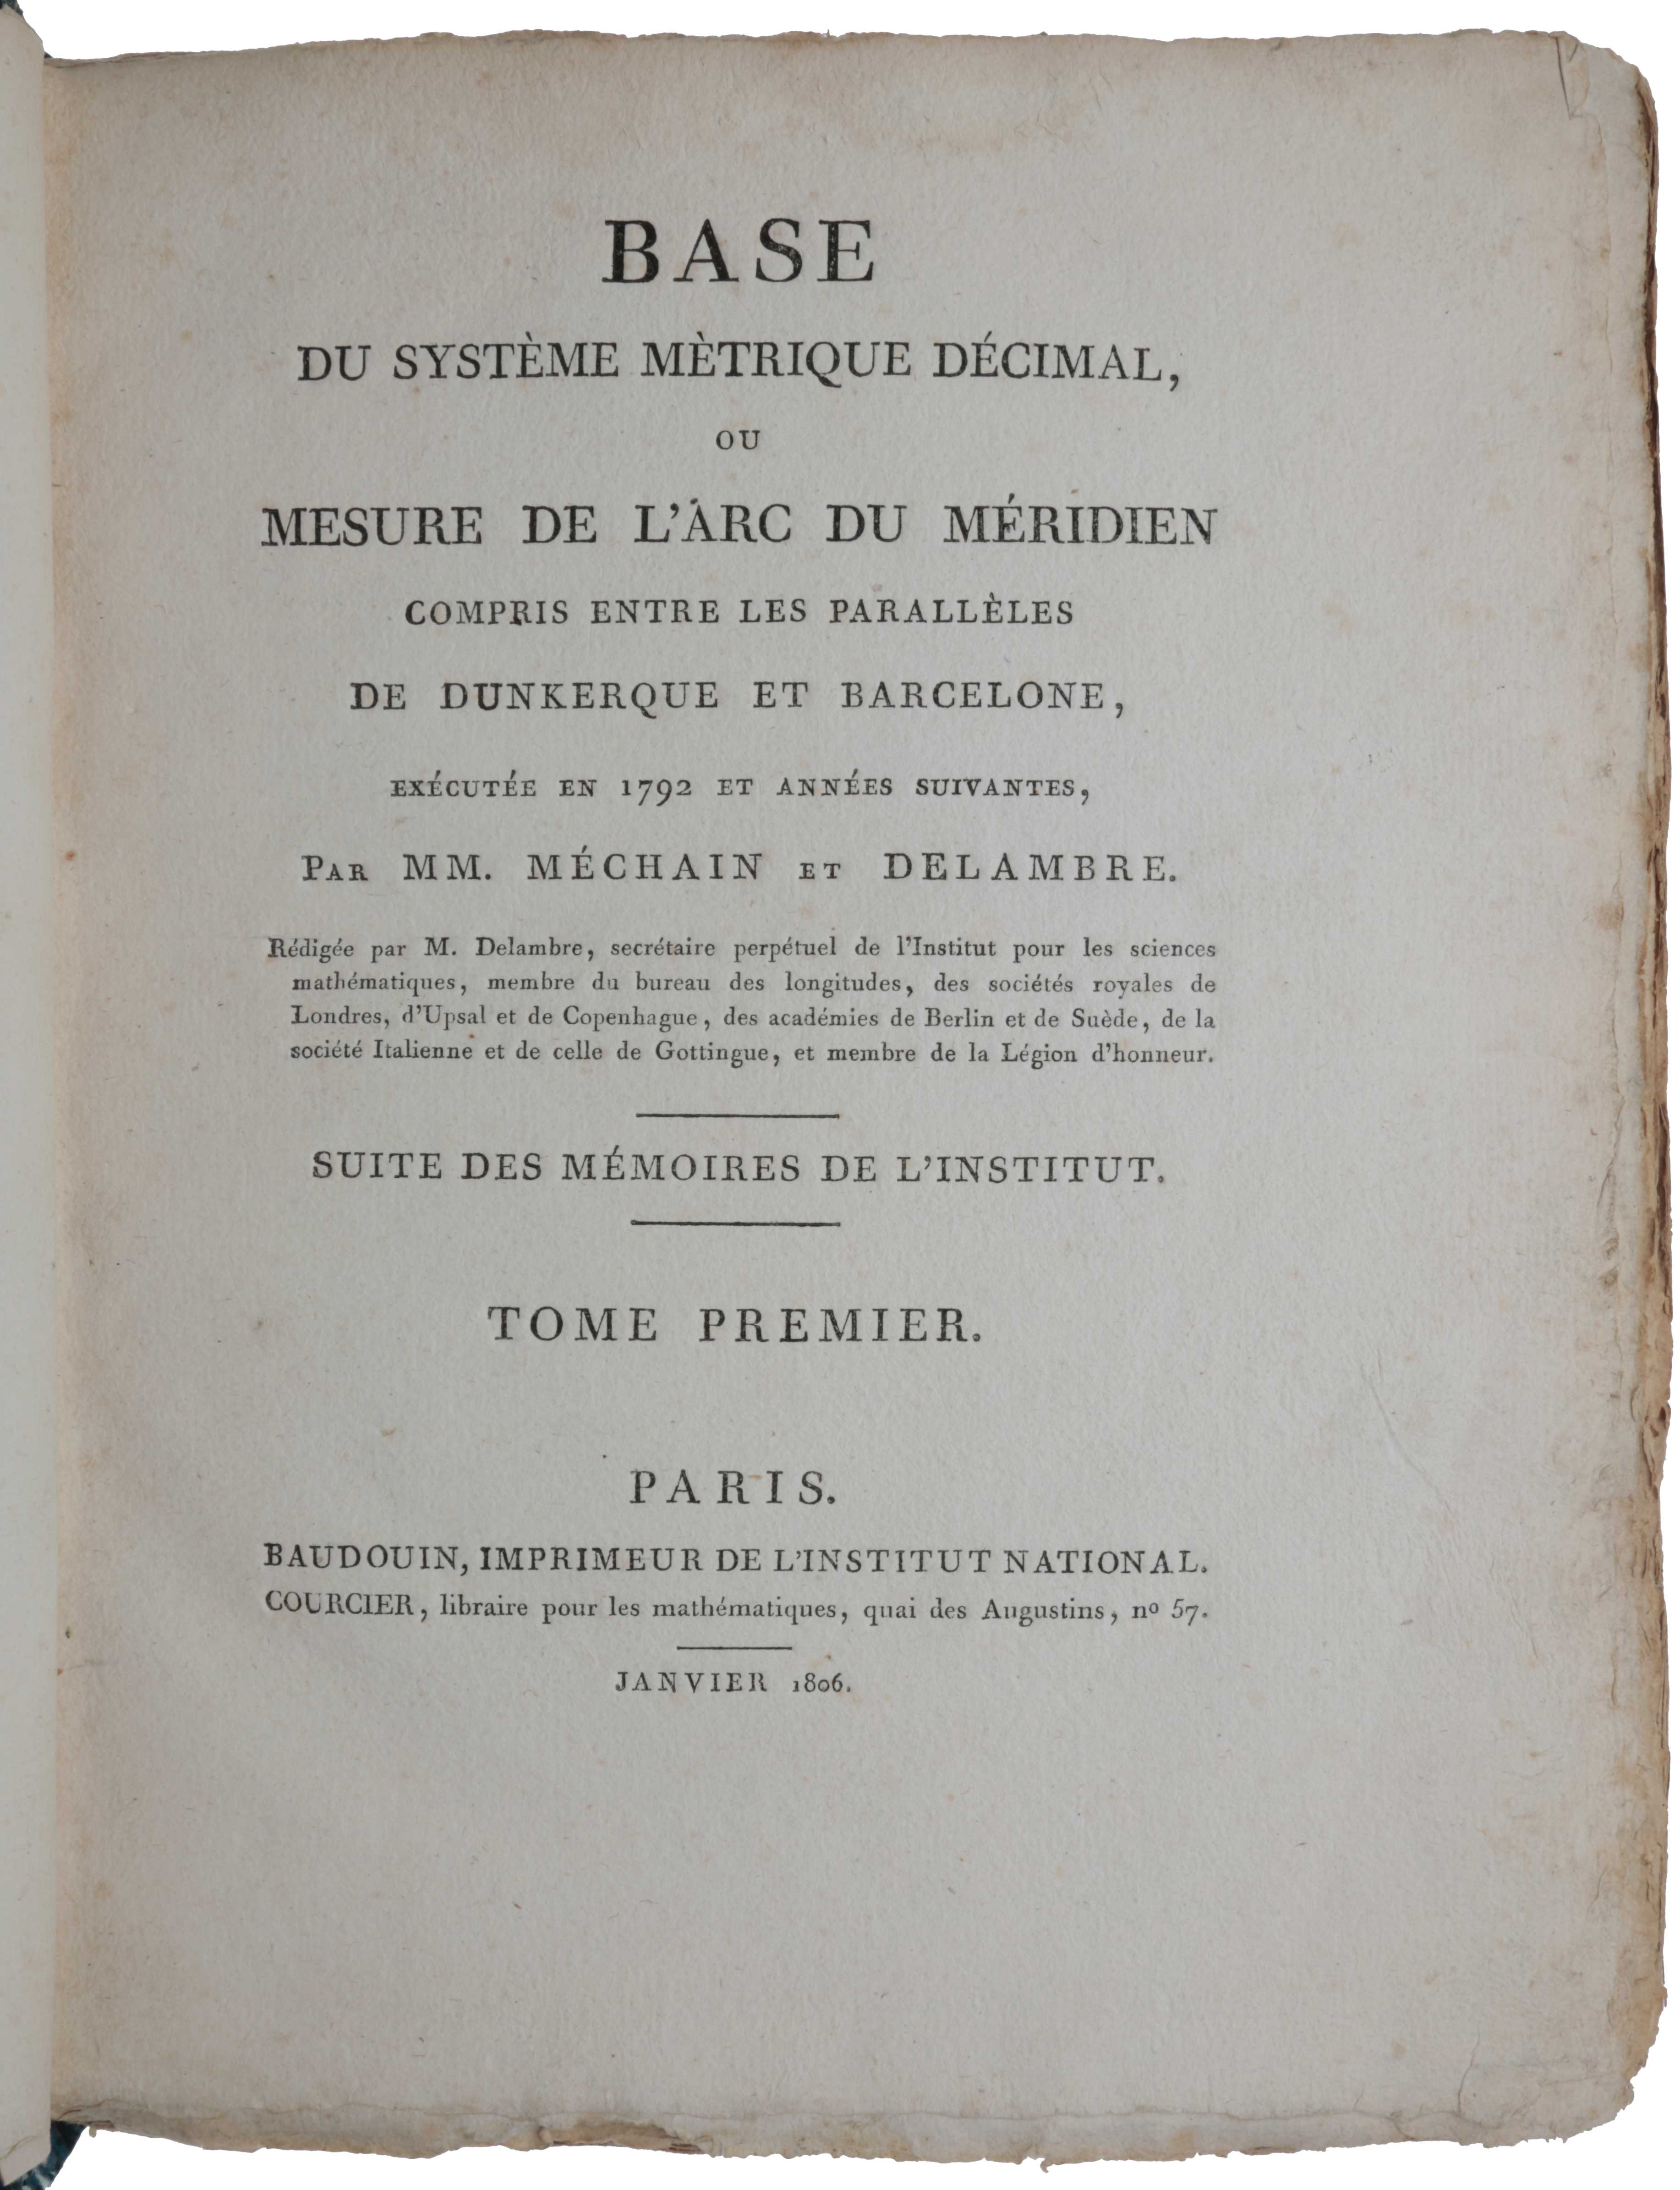 Item #4789 Base du système métrique décimal, ou mesure de l'arc du méridien compris entre les parallèles de Dunkerque et Barcelone, executée en 1792 et années suivantes. Jean Baptiste Joseph DELAMBRE, Pierre François André MÉCHAIN.